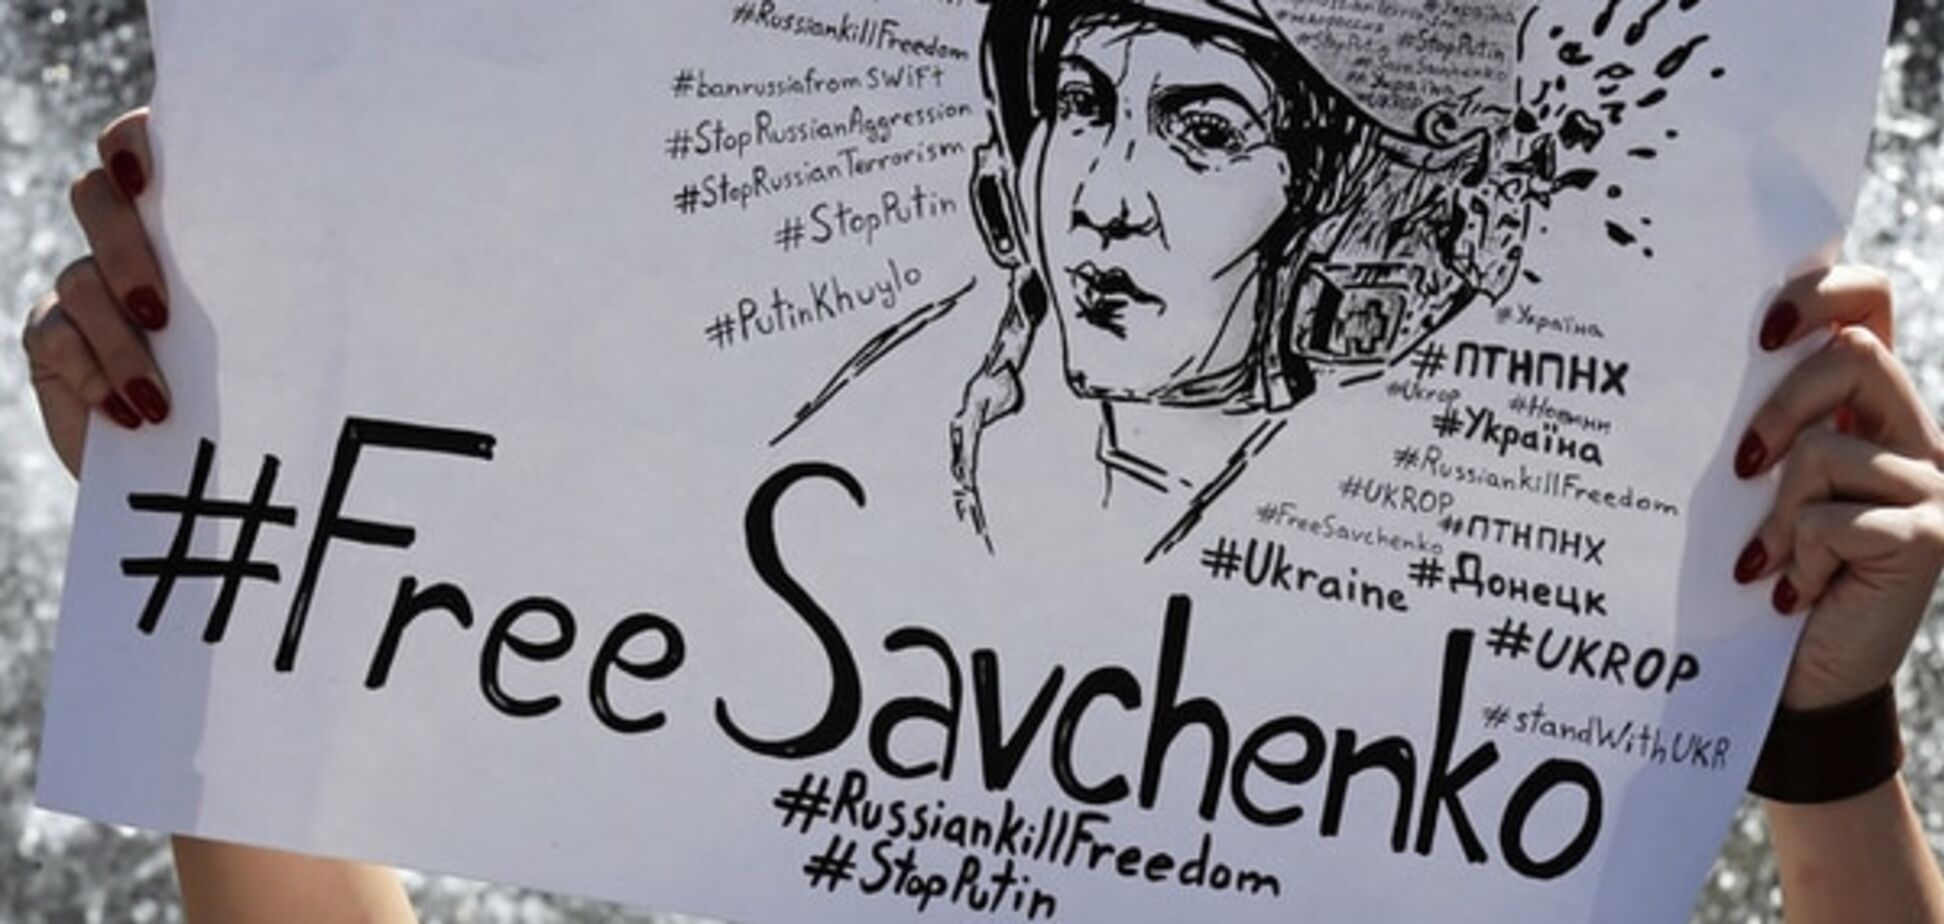 Free Savchenko: 40 томов дела летчицы стали доступны всем желающим